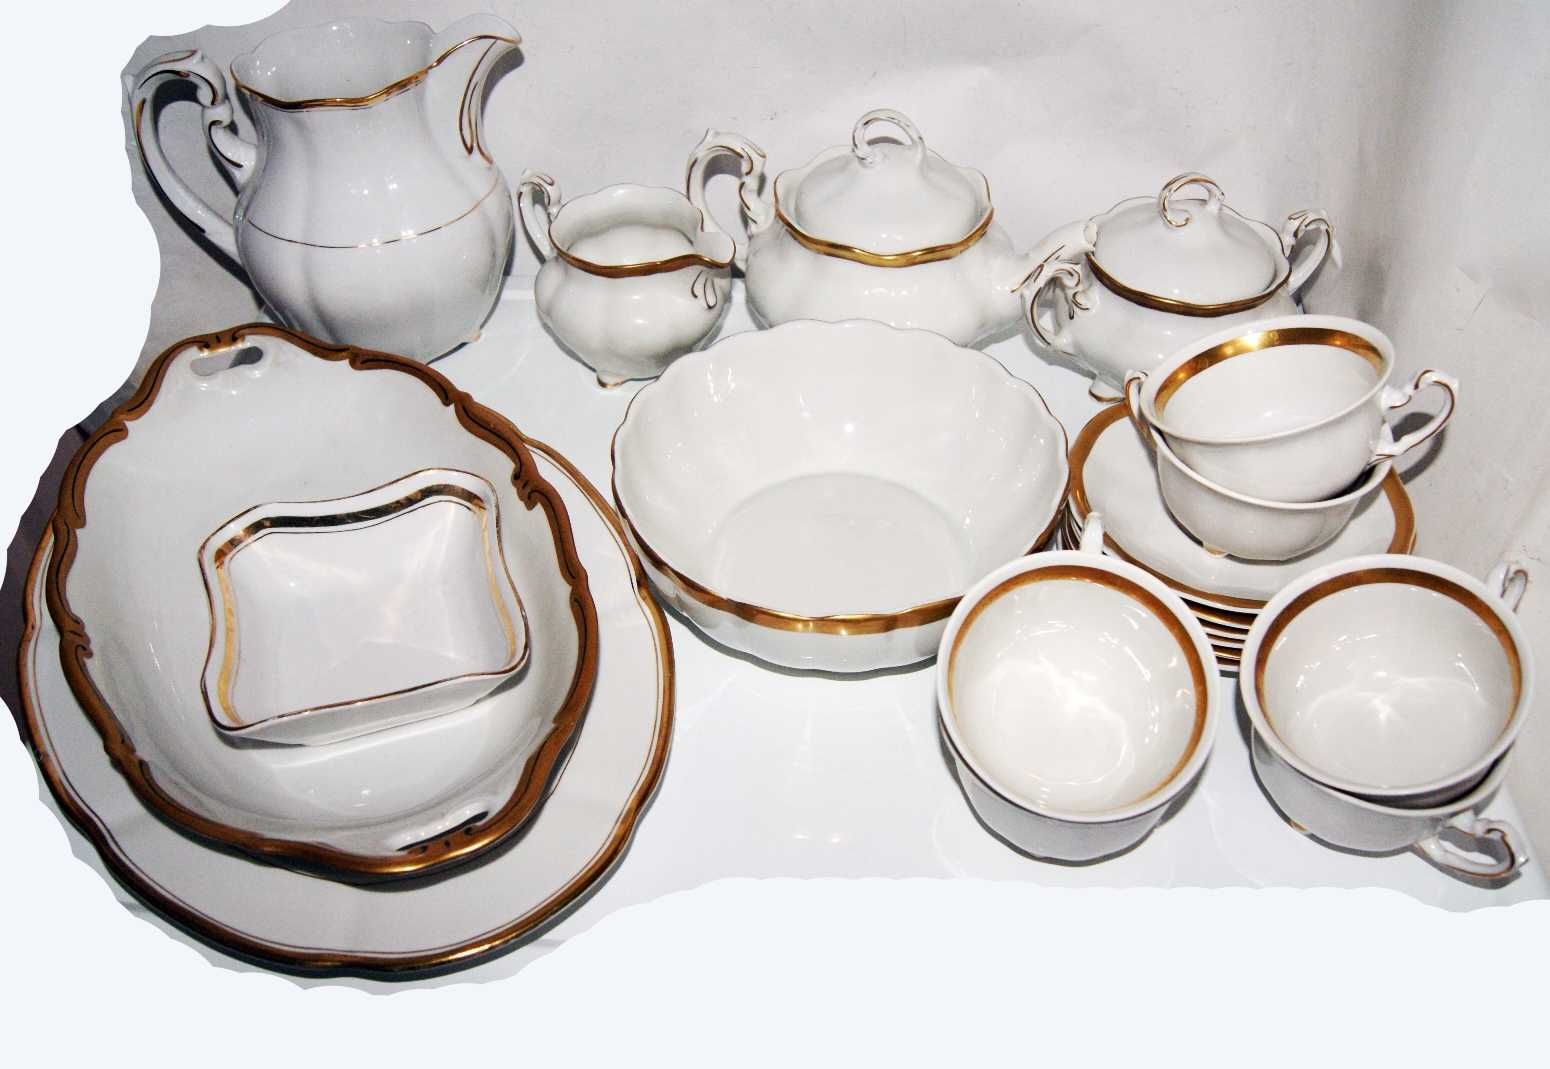 Для коллекционеров ретро Винтажный заварочный чайник Фарфоровый чайник